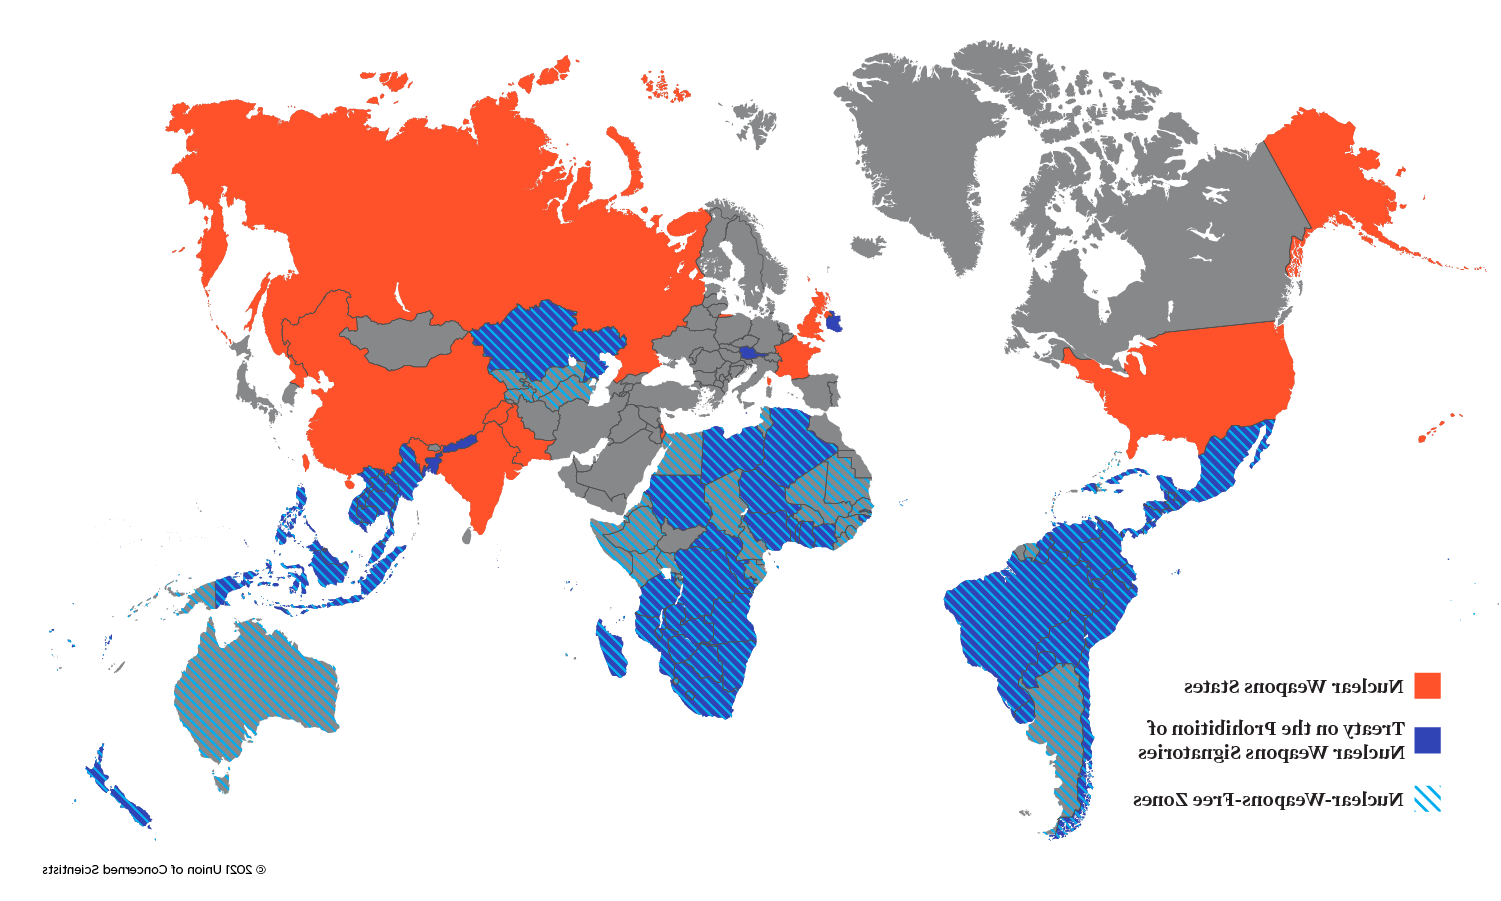 世界地图显示有核武器的国家, signatories of TPNW, 以及无核武器区的国家